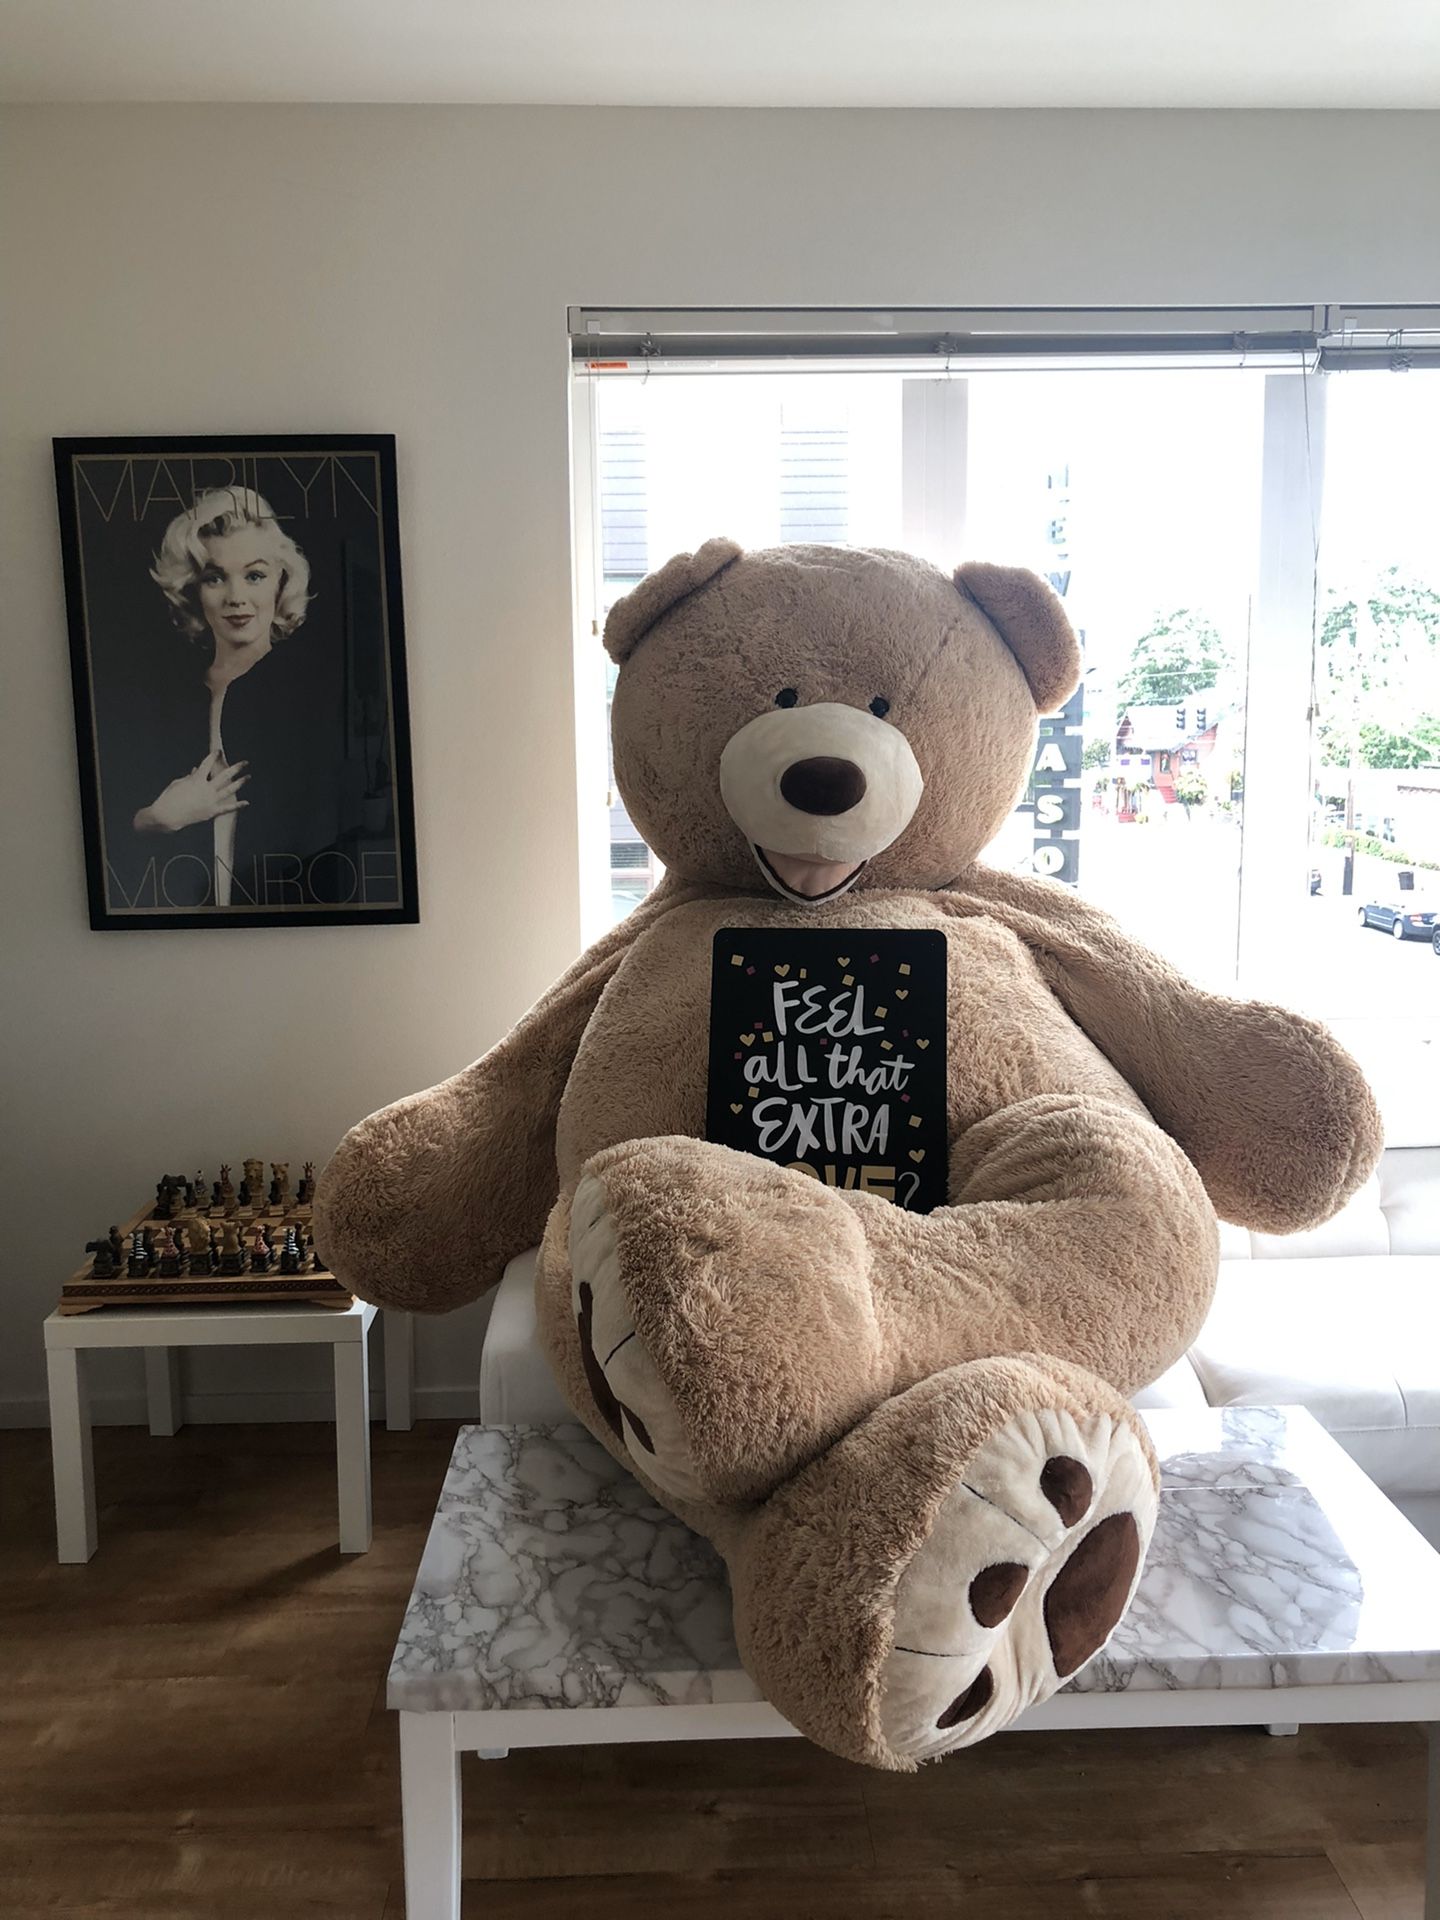 8 ft. Giant Teddy Bear!!